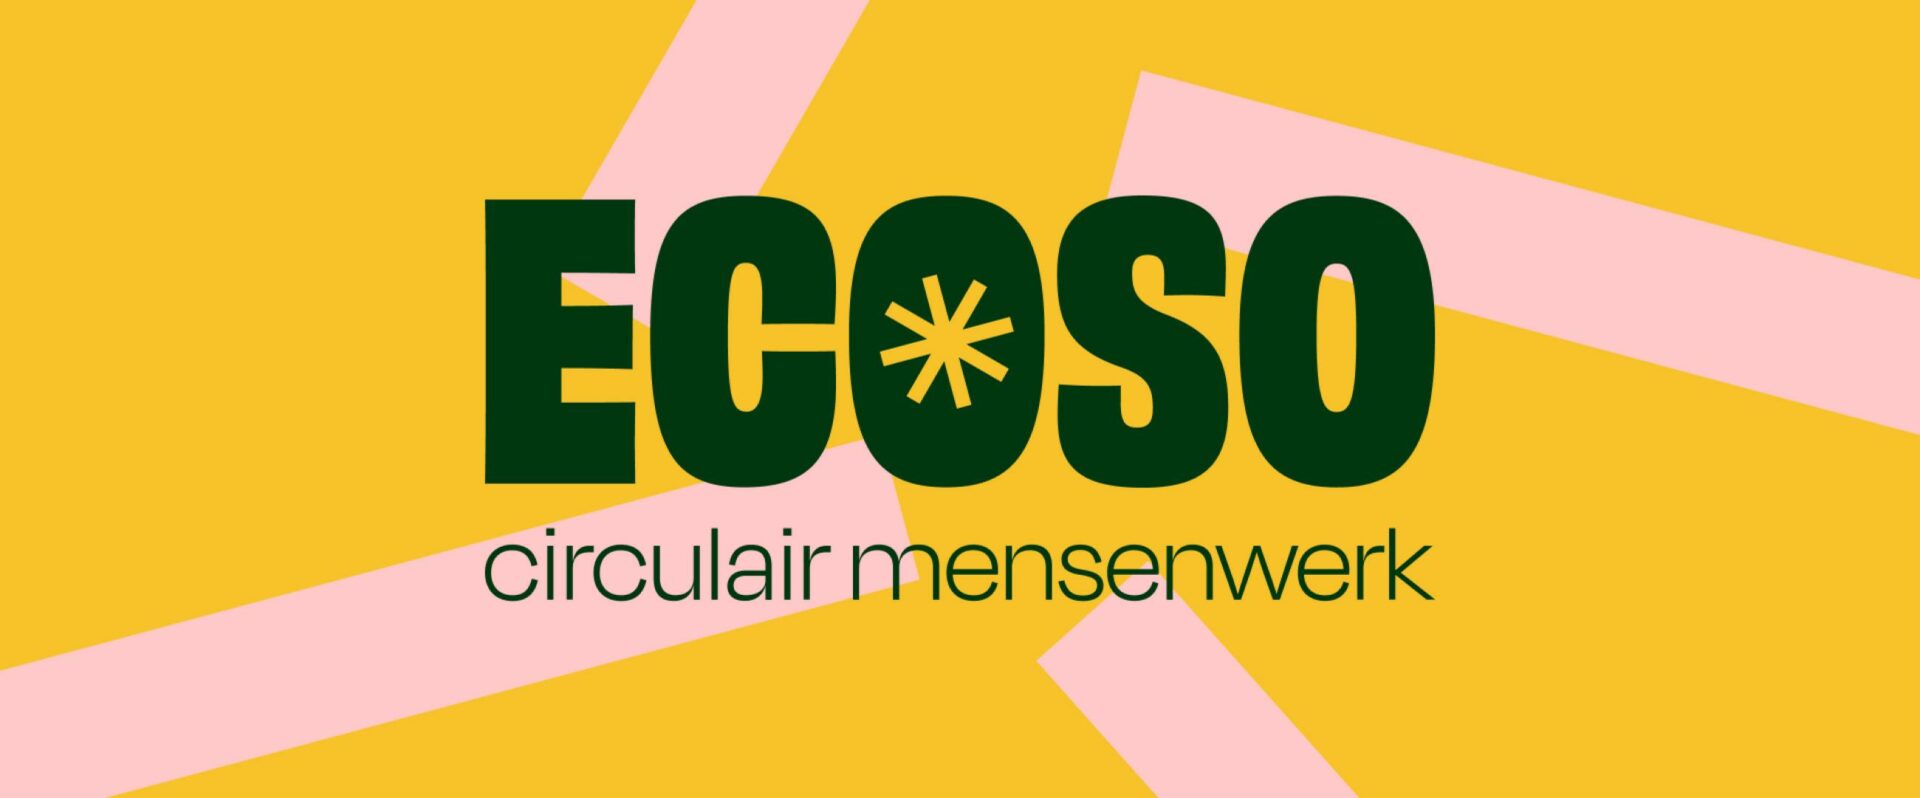 ecoso-rebranding